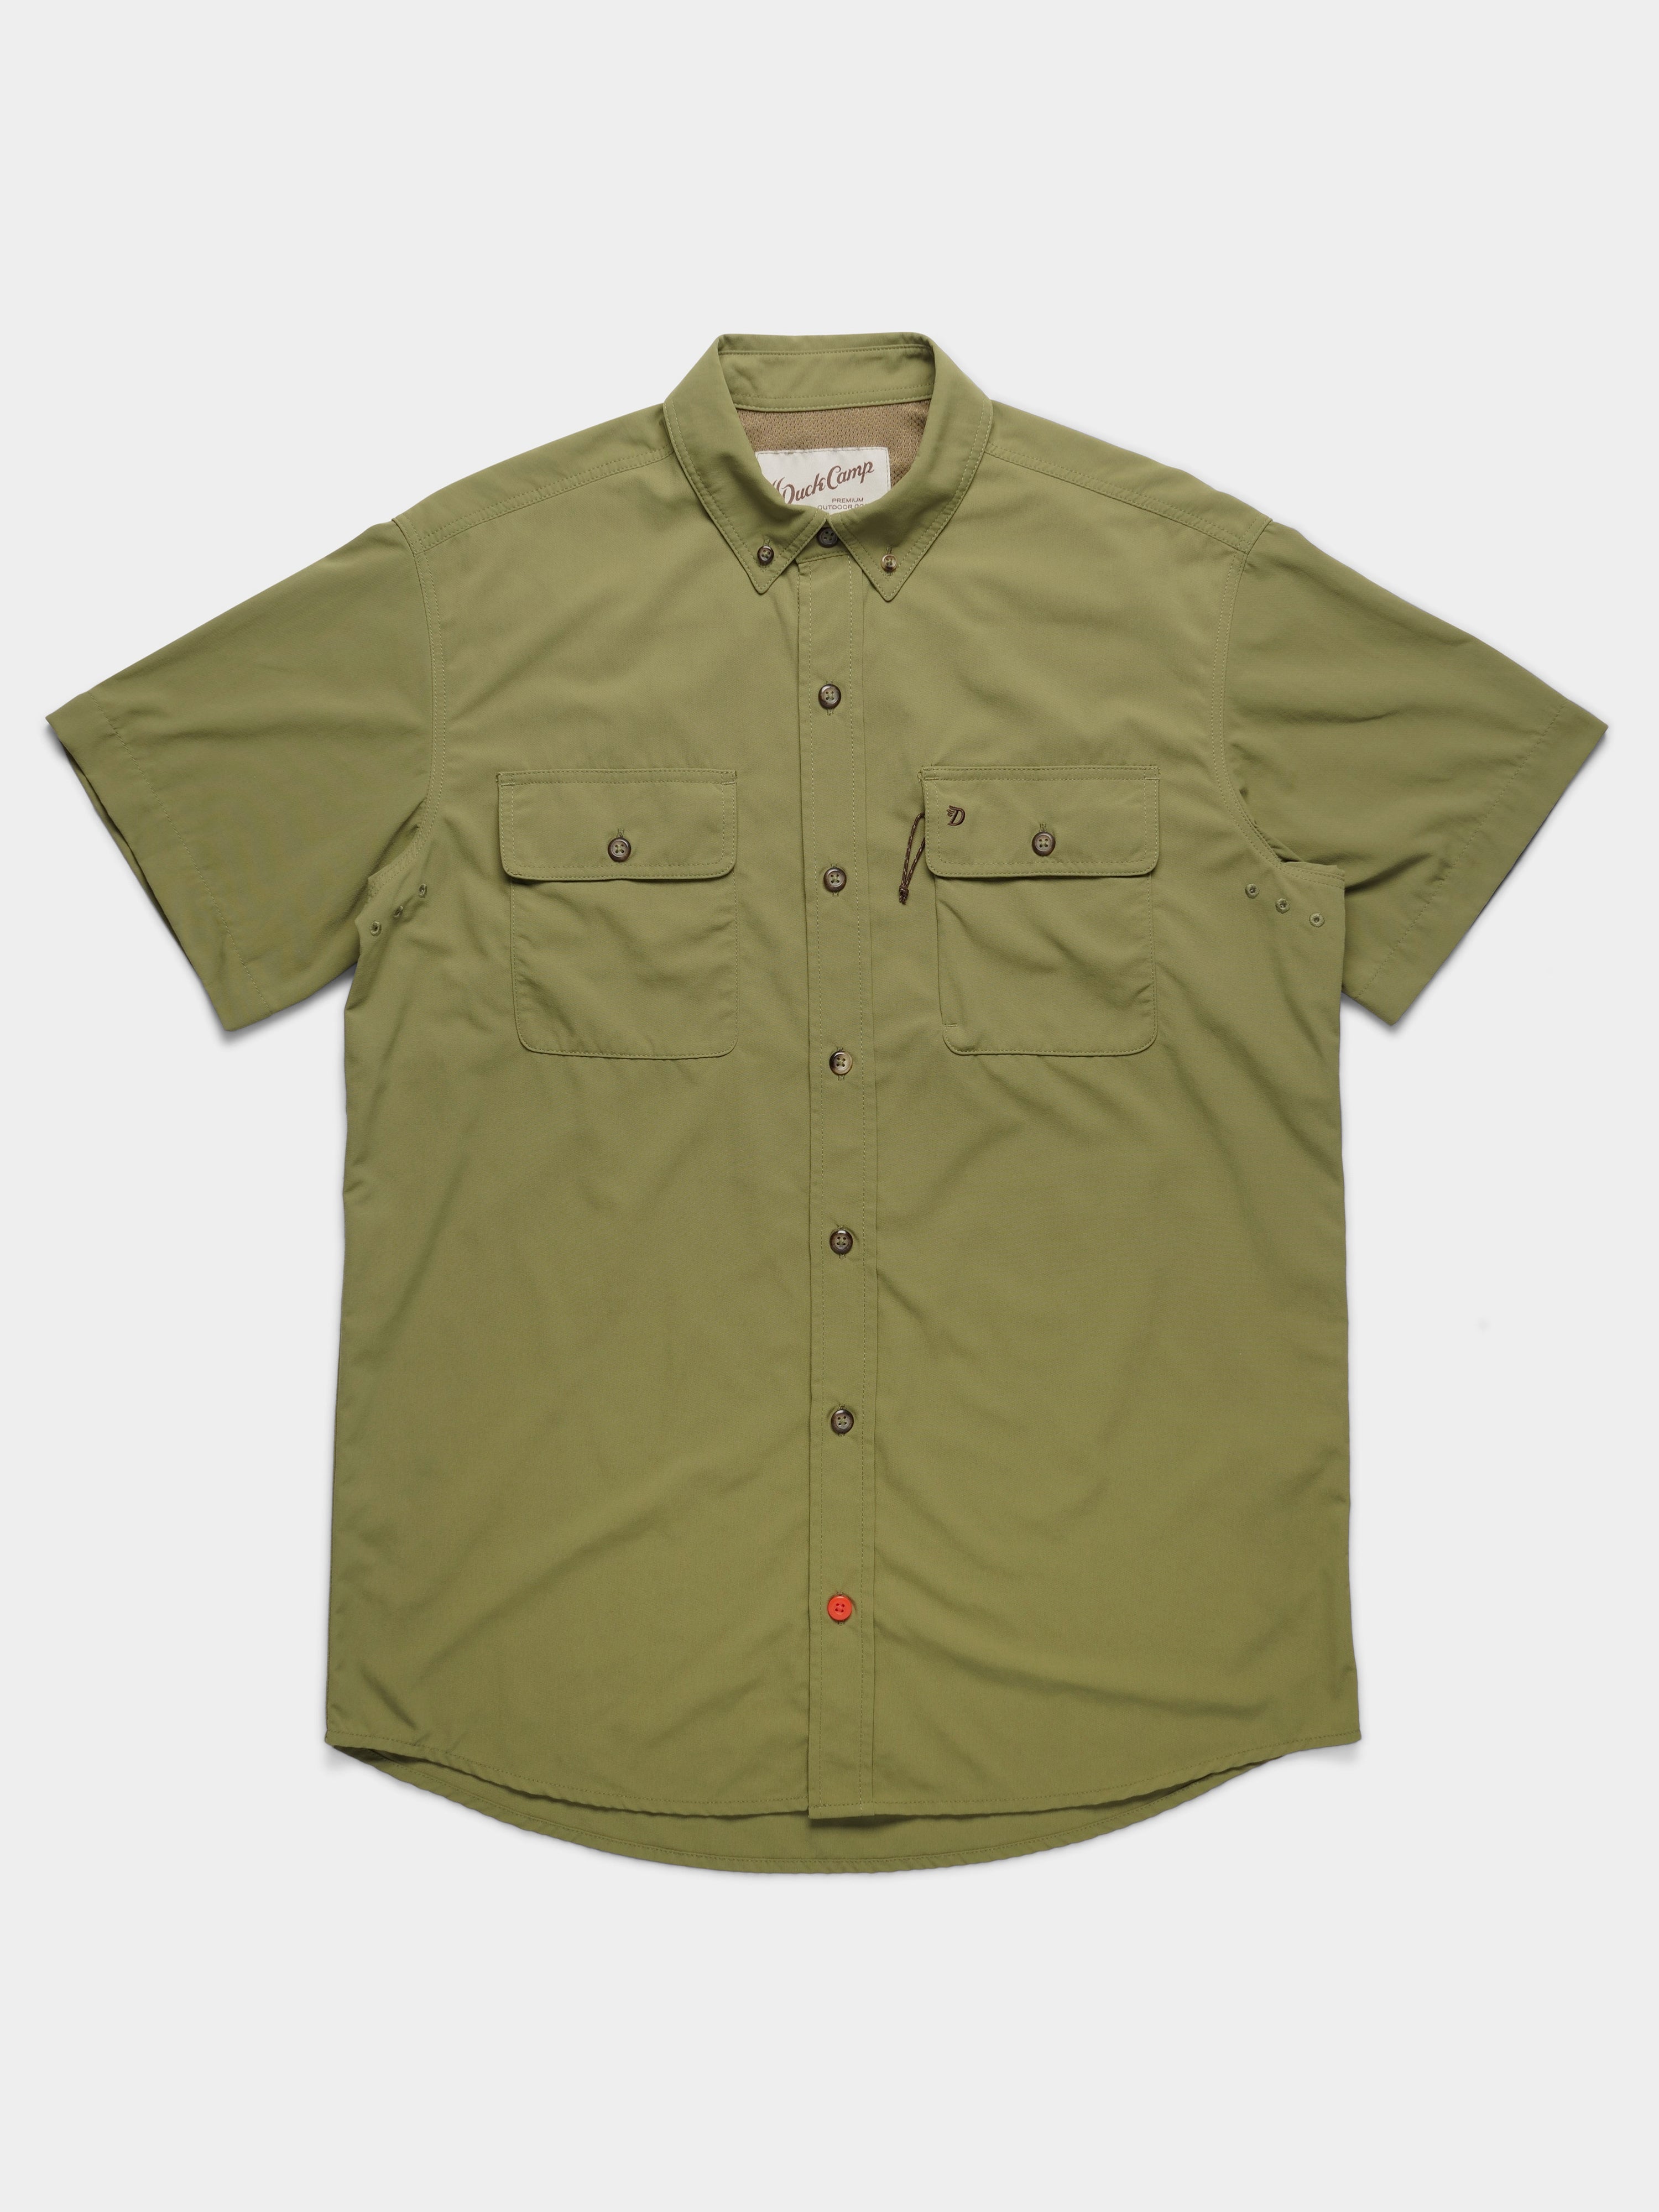 Duck Camp Lightweight Hunting Short-Sleeve Shirt - Men's Military Green, XL